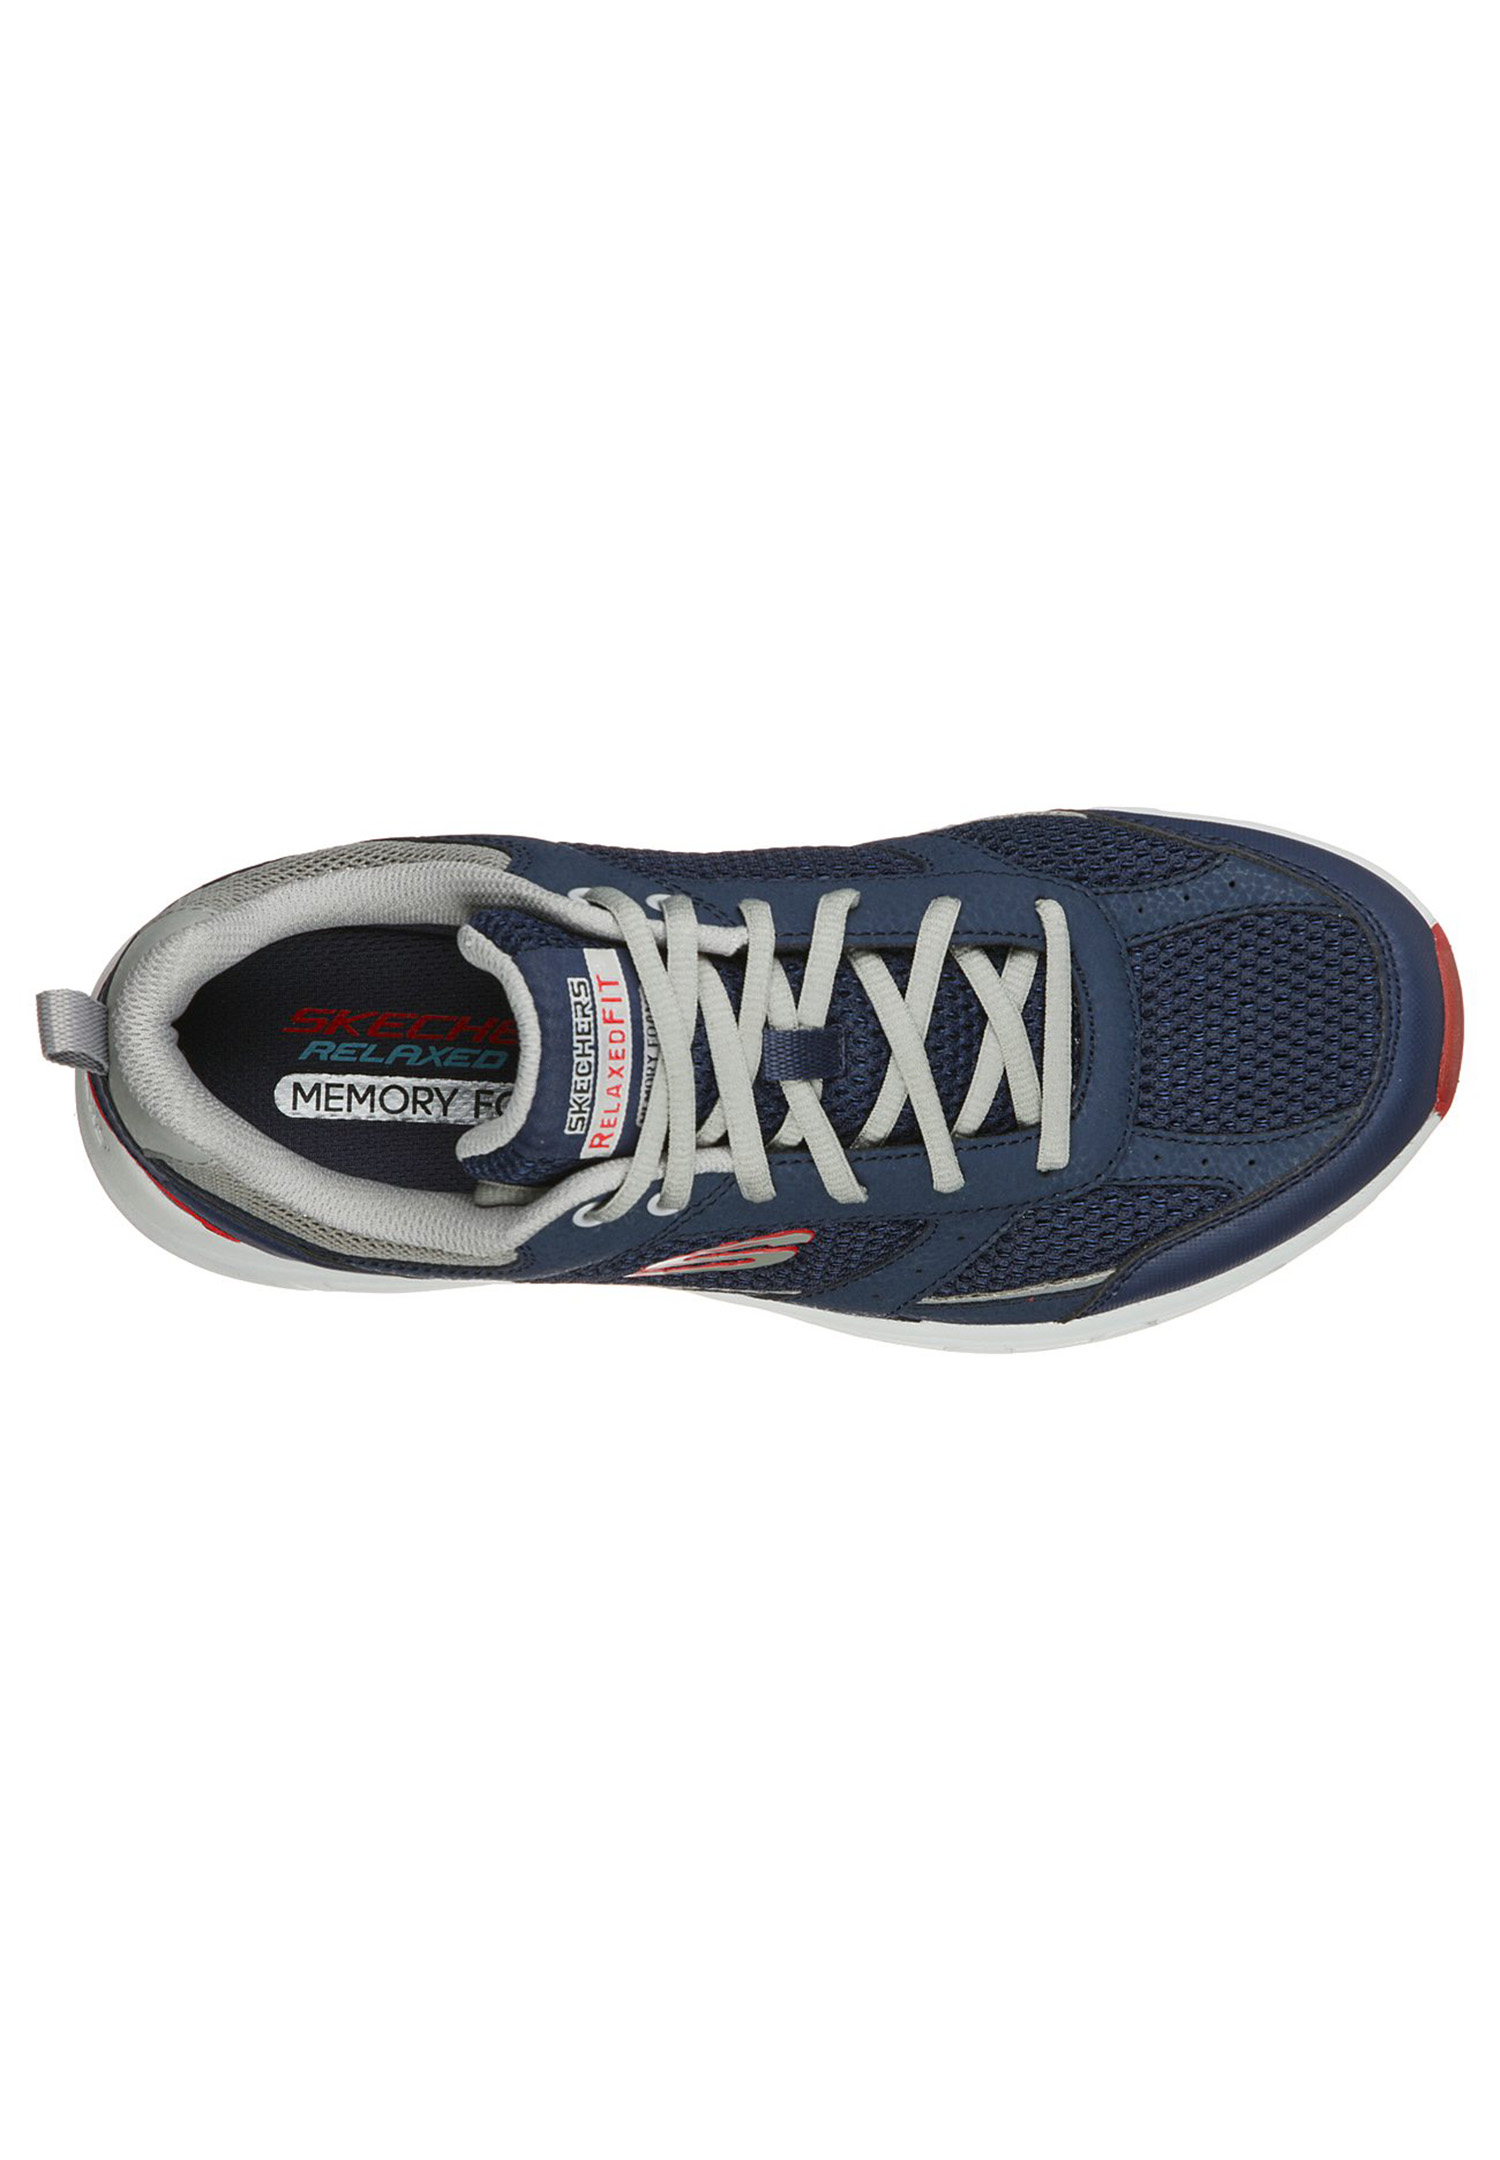 Skechers Outdoor Oak Canyon - VERKETTA Herren Sneaker 51898 Blau 